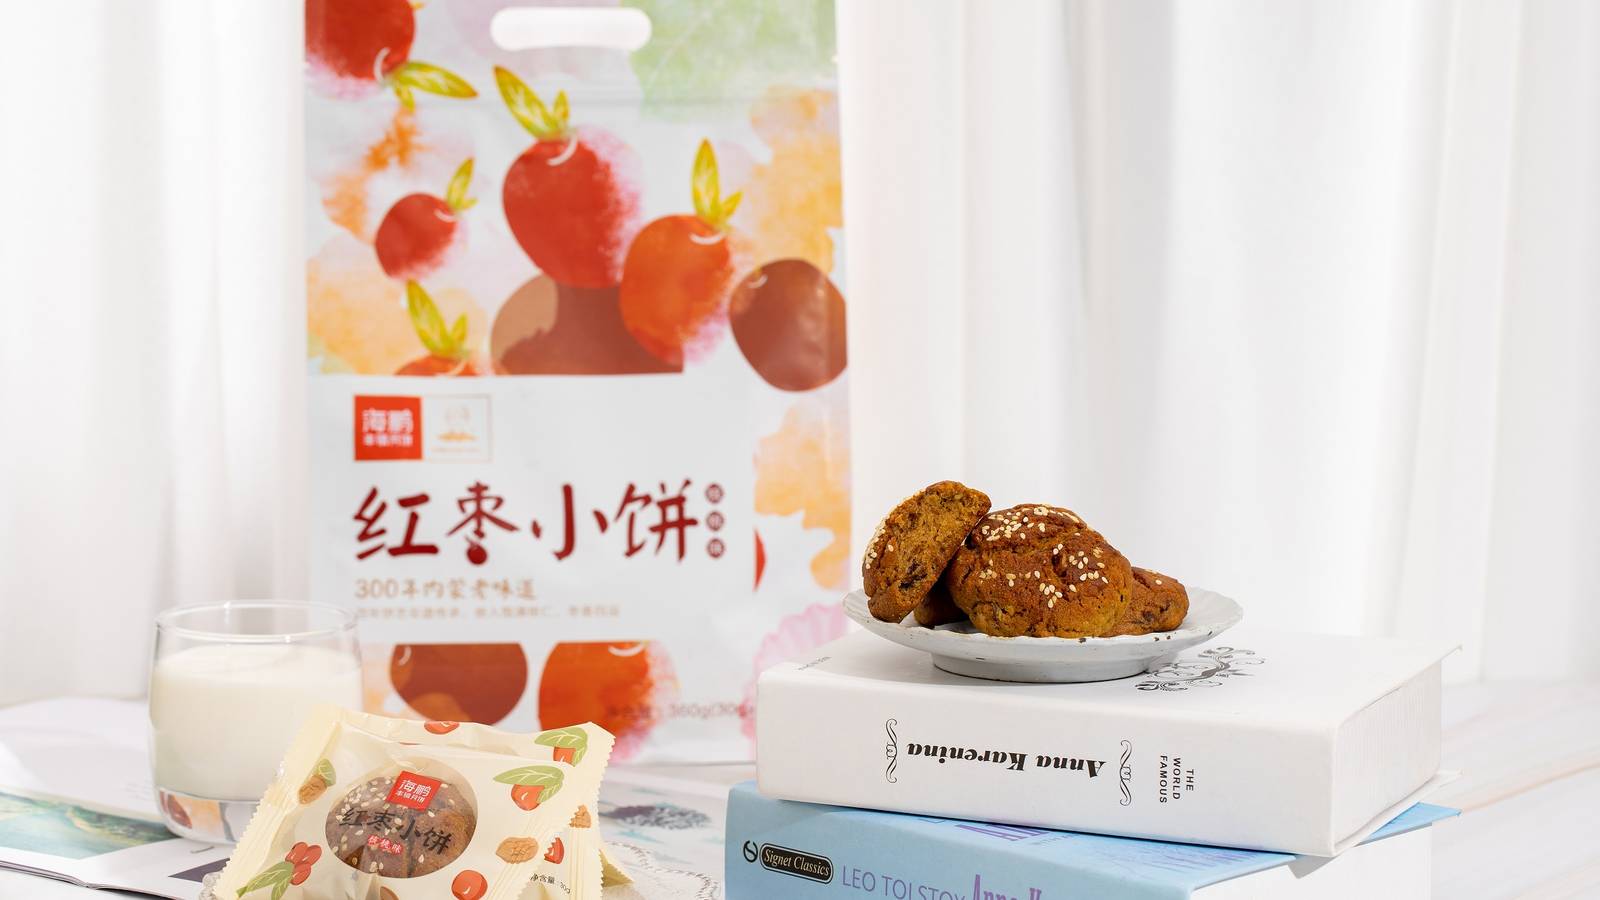 红枣小饼品牌宣传零售包装